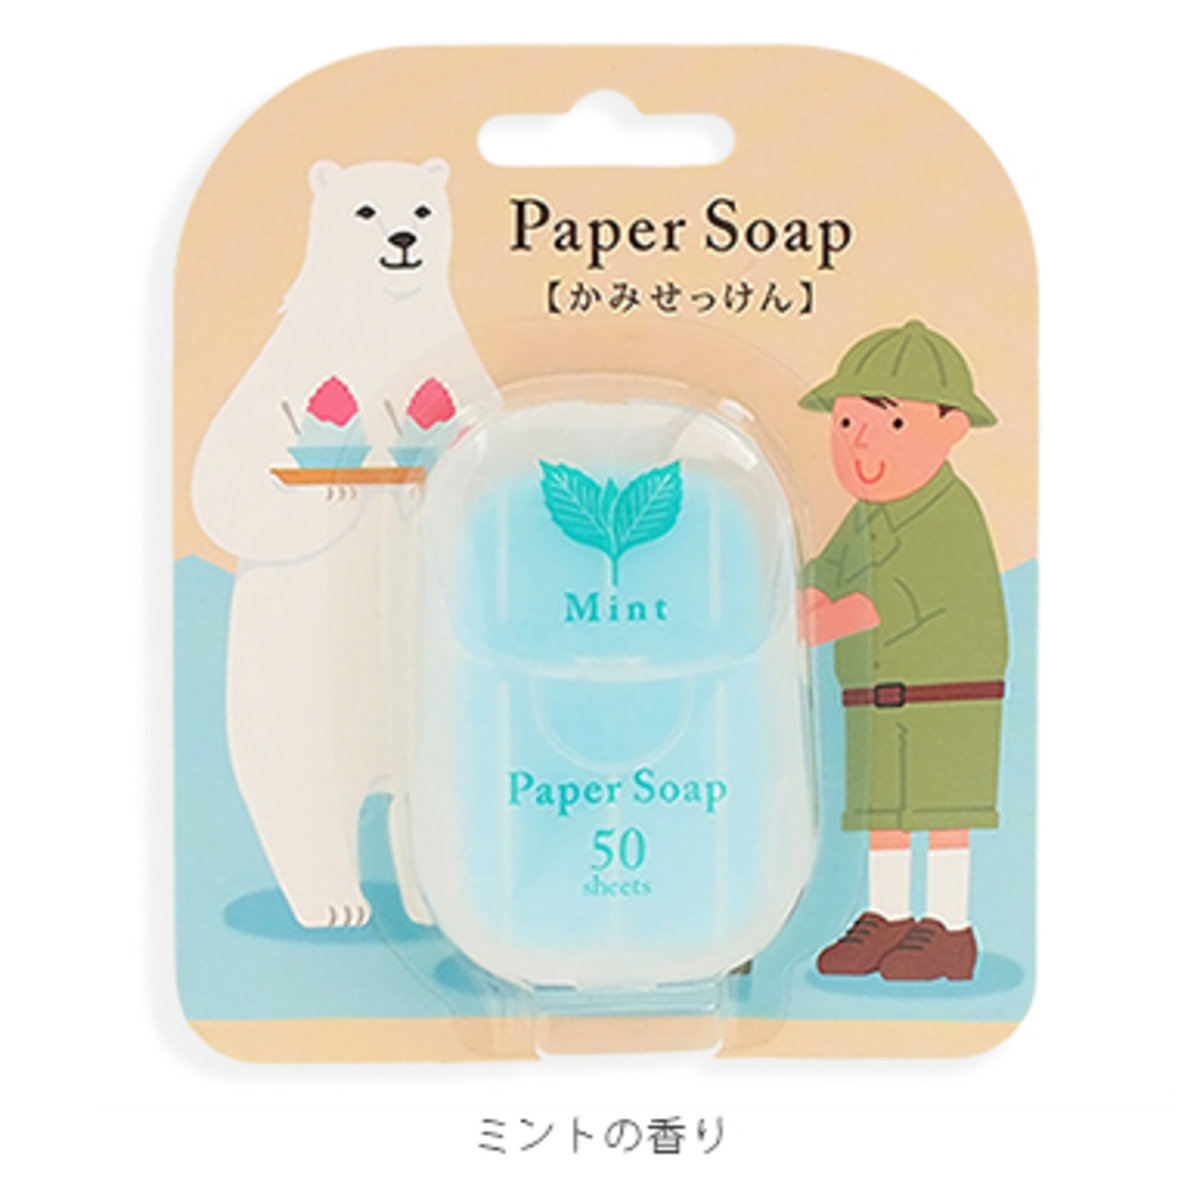 (薄荷味) 日本 CHARLEY paper soap 攜帶式香皂紙(每盒50枚)  x 1盒